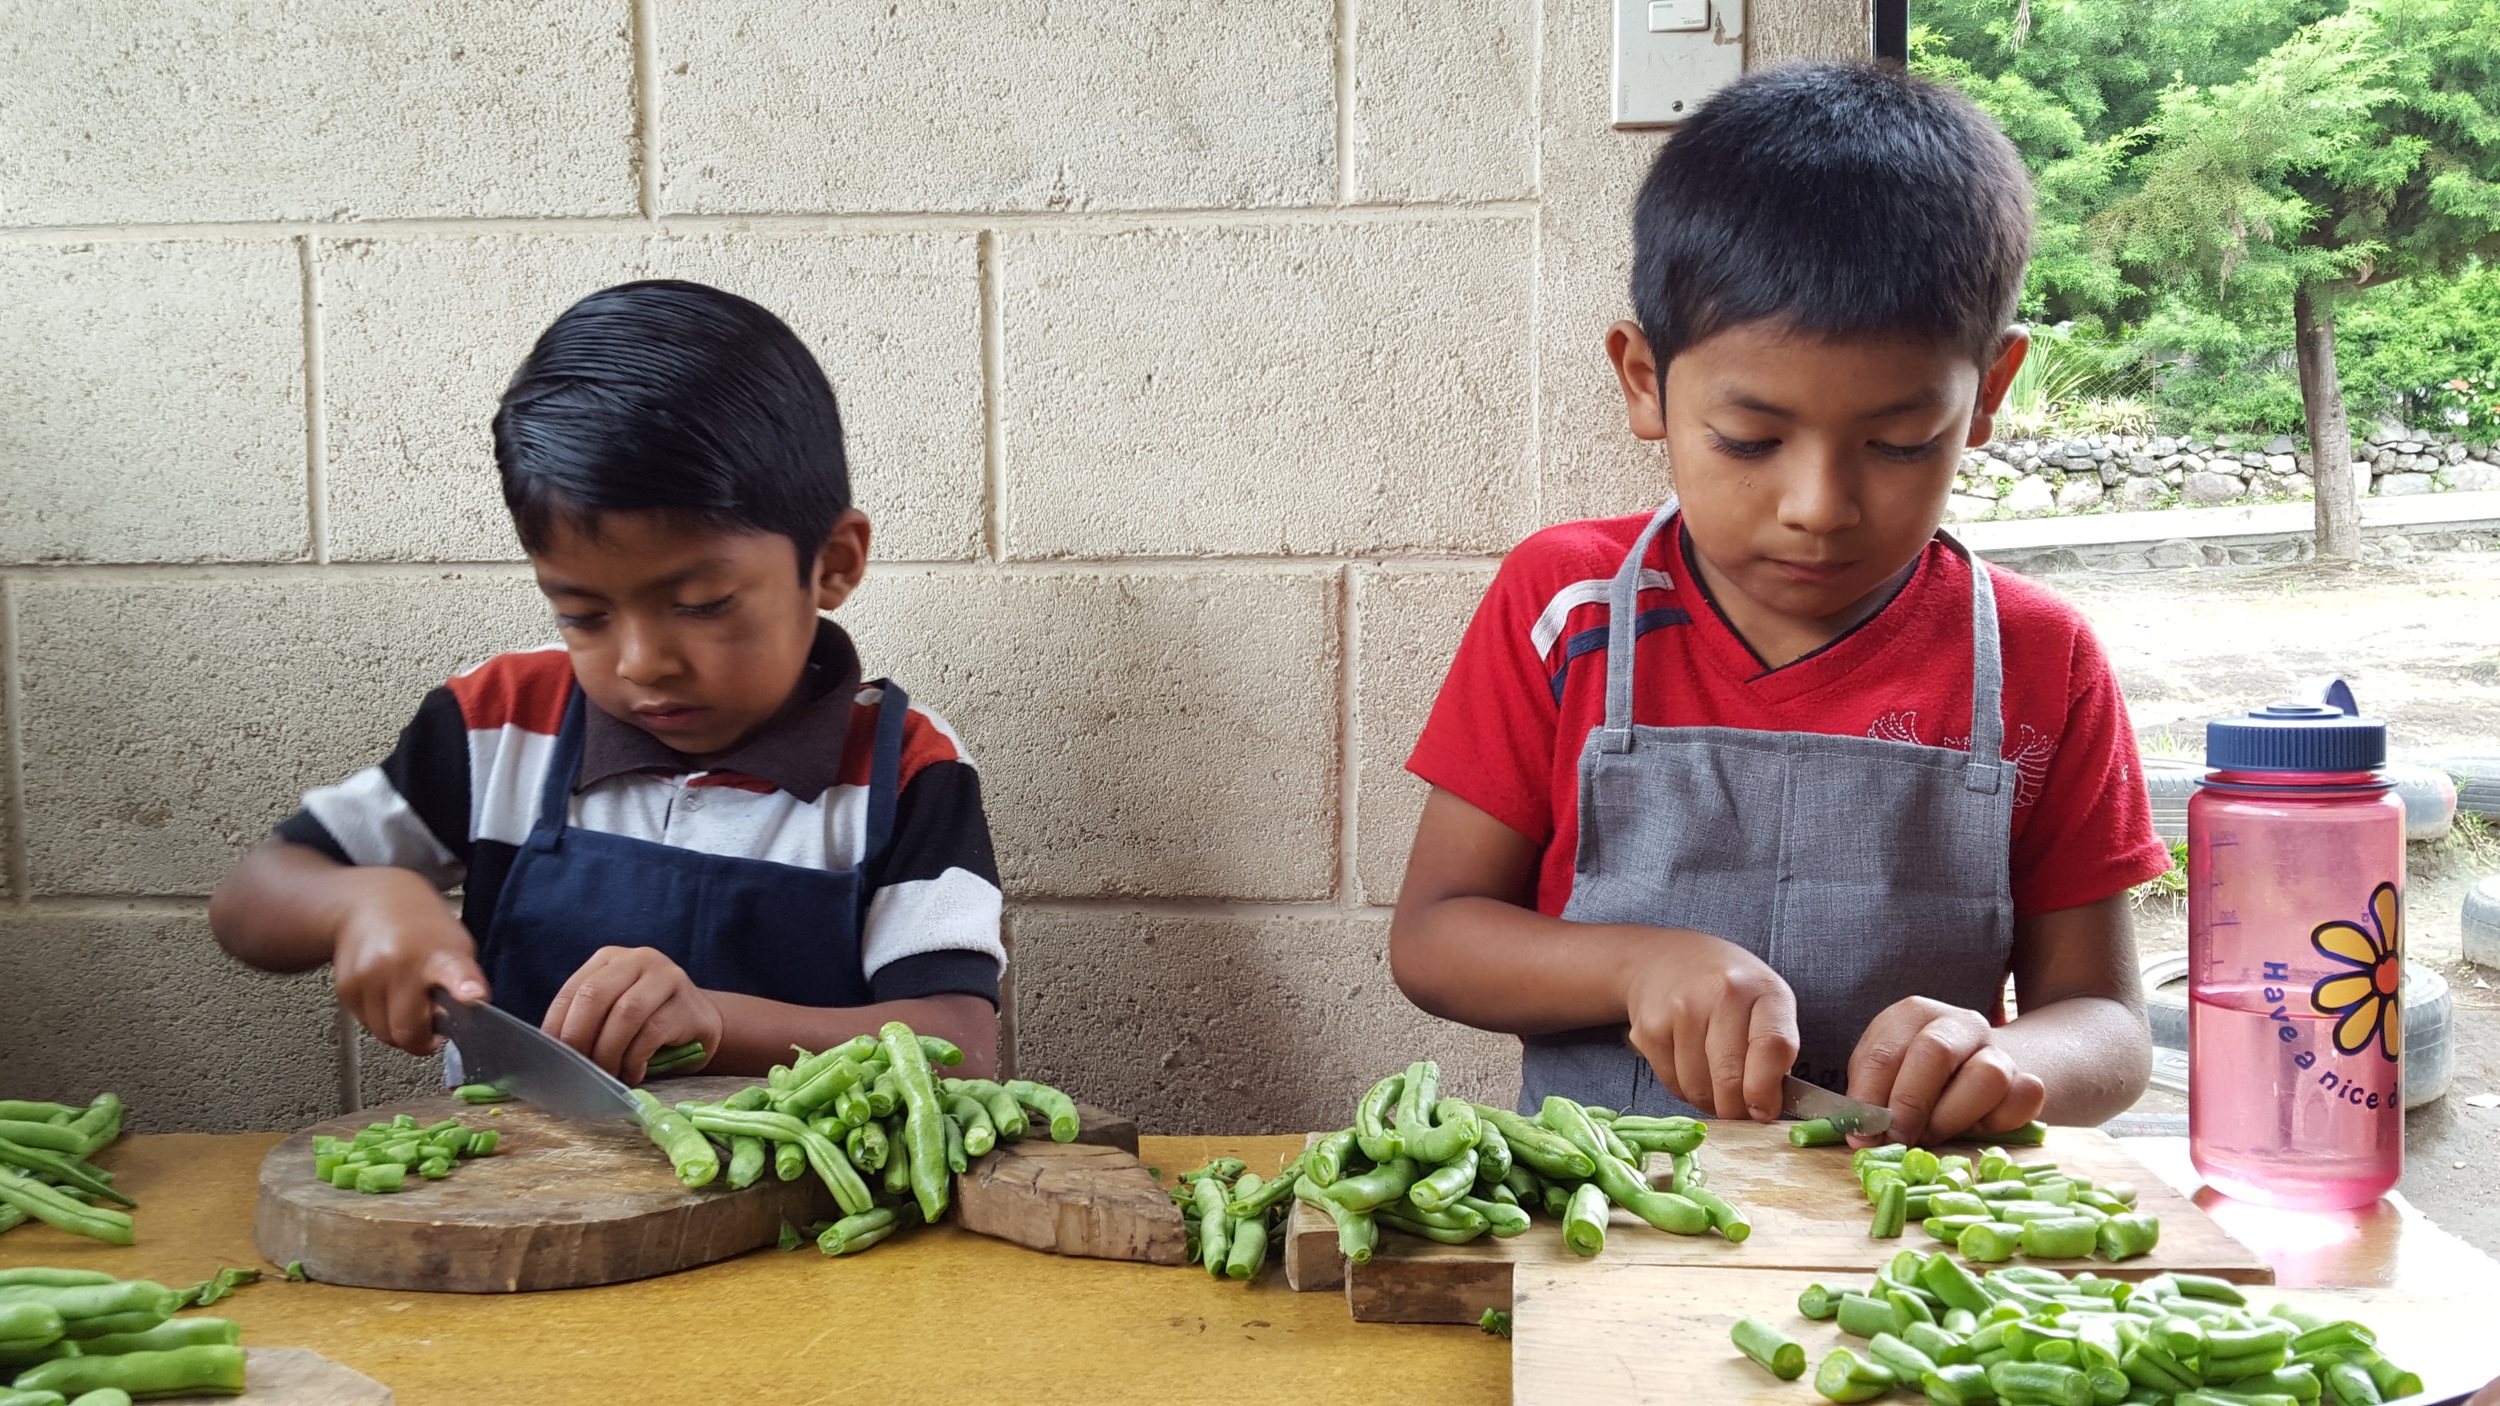  Preparing the harvest for the school lunch. &nbsp; &nbsp; &nbsp;(Photo courtesy of Pueblo a Pueblo) 